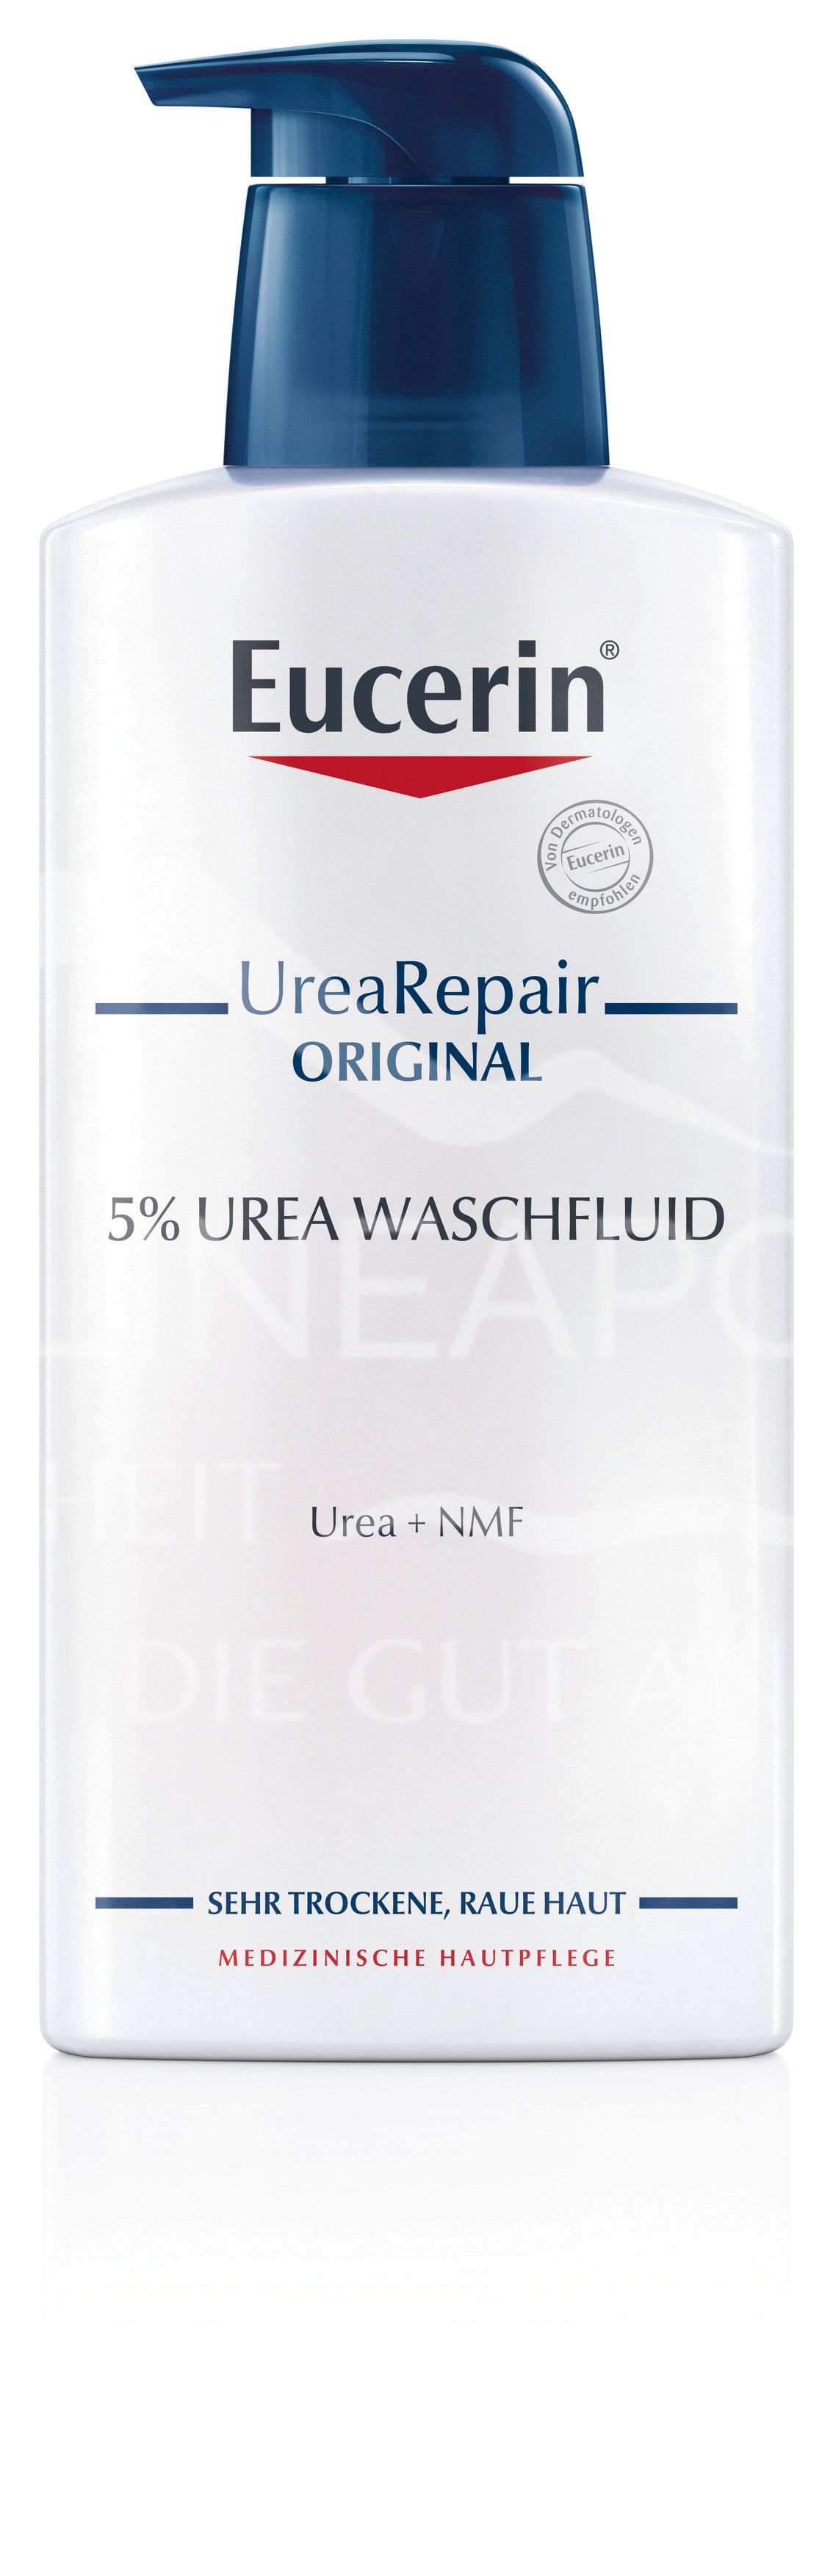 Eucerin® UreaRepair ORIGINAL Waschfluid 5% Urea